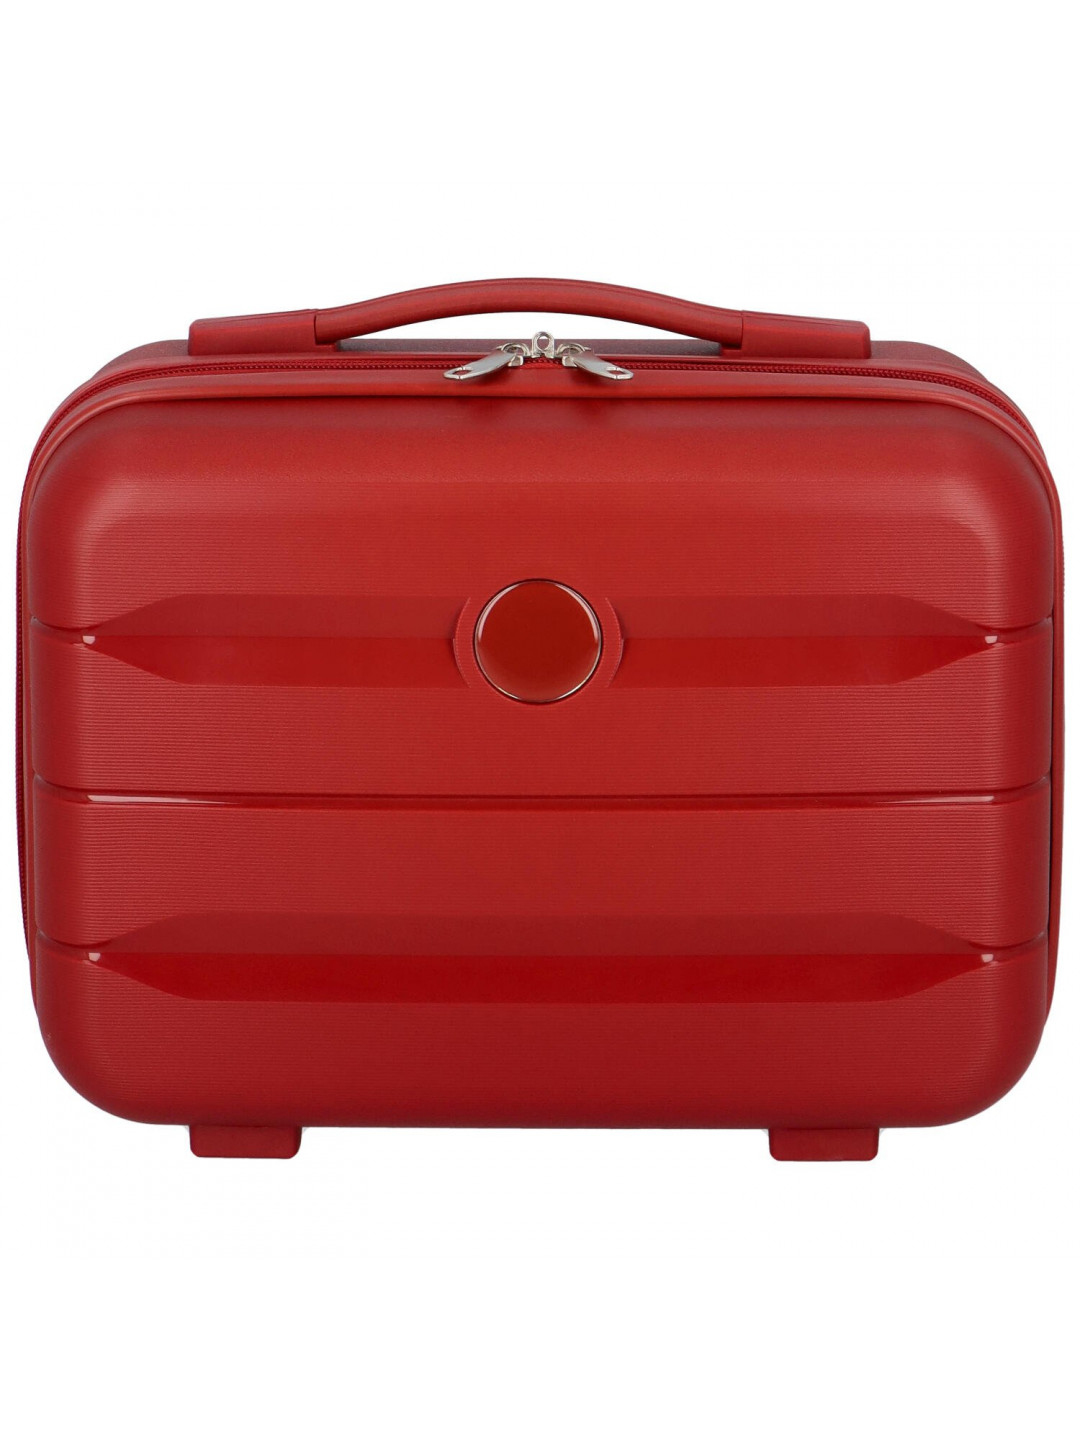 Cestovní plastový kufr Hesol velikost XS tmavě červený